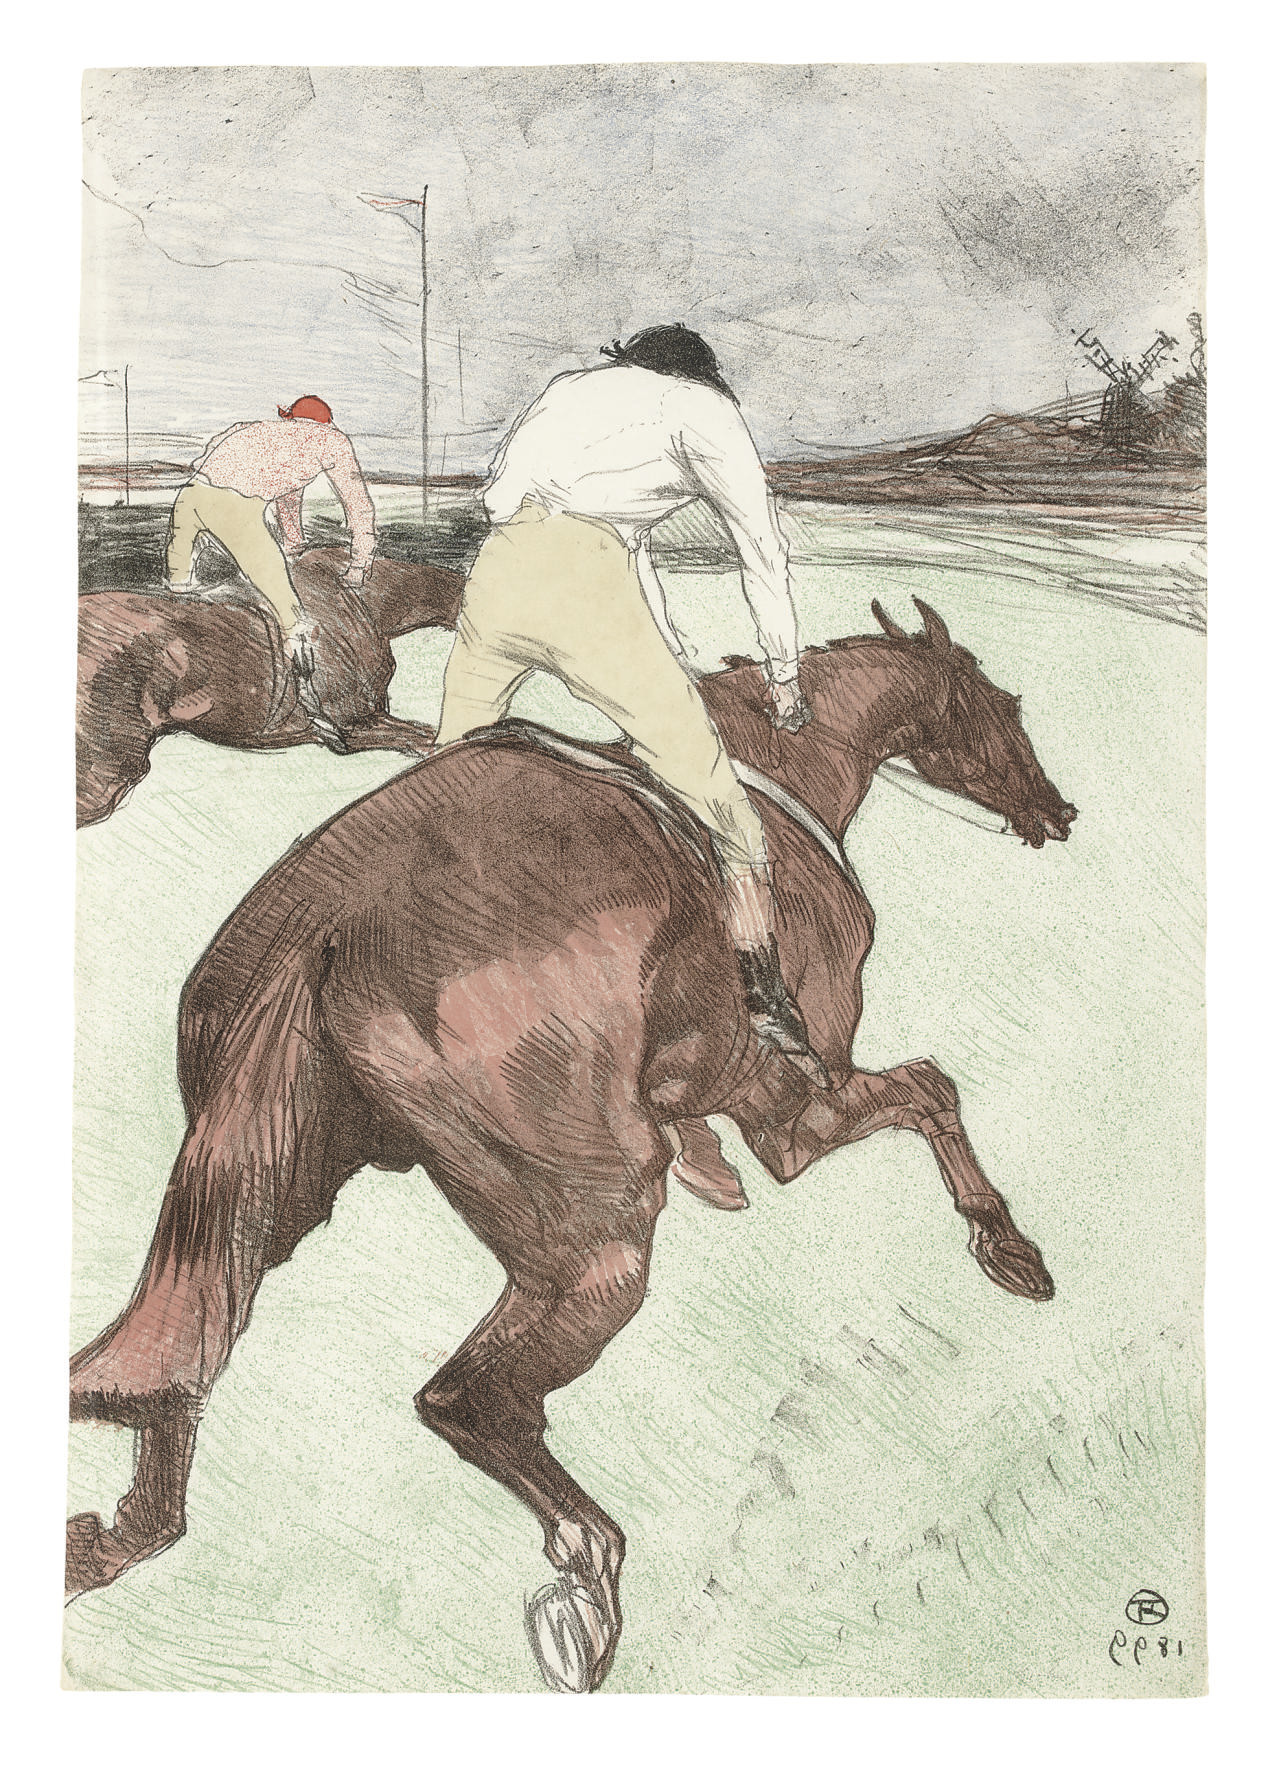 Le Jockey by Henri de Toulouse-Lautrec - 1899 - 52 x 36.6 cm private collection